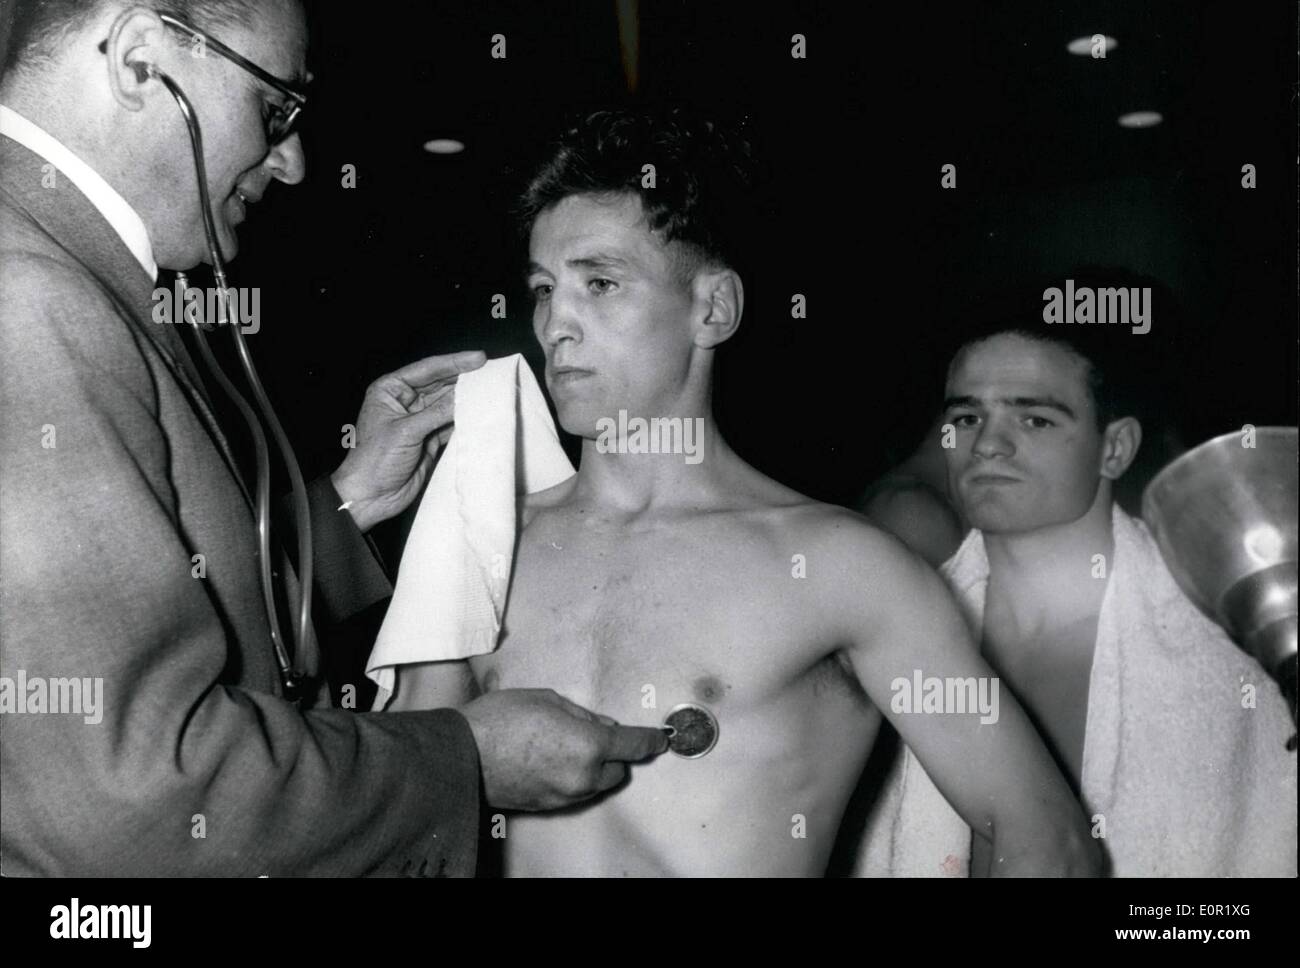 Septembre 09, 1957 - World Champion Bantam Halimi versus Brogan chic à Paris Ã¢â€" pour la réouverture de la saison de boxe, Pala Banque D'Images